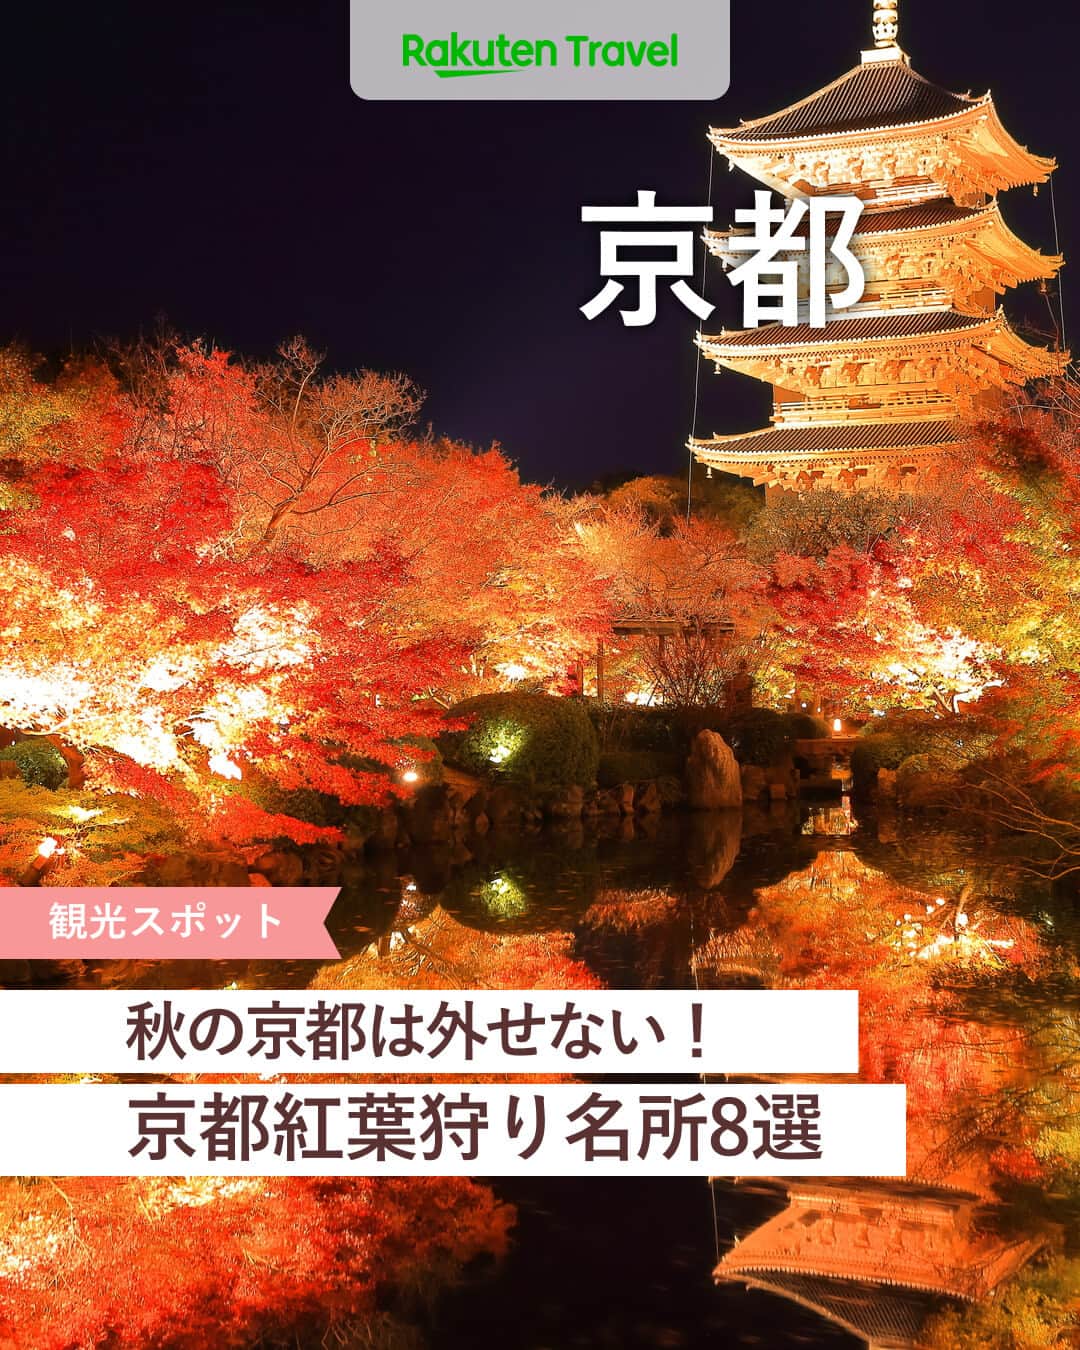 楽天トラベル のインスタグラム：「投稿を保存して見返してね😊 毎日おすすめの観光スポットやホテルを紹介している 楽天トラベル💚 👉@rakutentravel  ーーーーーーーーーーーーー  ライトアップされた紅葉が一段と幻想的な京都を紹介します🍁 定番から穴場スポットまでこの季節にしか見られない素敵な景色を京都で味わってみてはいかがですか…🤍  ーーーーーーーーーーーーー  1　#清水寺 2　#圓徳院 3　#東寺 #教王護国寺 4　#永観堂禅林寺 #禅林寺 5　#嵯峨野トロッコ列車 #嵯峨野 6　#貴船もみじ灯篭 #貴船神社 7　#天授庵 8　#北野天満宮 #もみじ苑  ーーーーーーーーーーーーー  #rakutentravel をつけて投稿してくだされば、 あなたの撮った写真が楽天トラベルアカウントに掲載されるかも👀  旅の計画に夢中になれるインスタマガジン👜 楽天トラベルをフォローして理想の旅をみつけてね🛫@rakutentravel  いってみたいと思った人は気軽にコメント欄にスタンプ送ってね💕  ーーーーーーーーーーーーー」